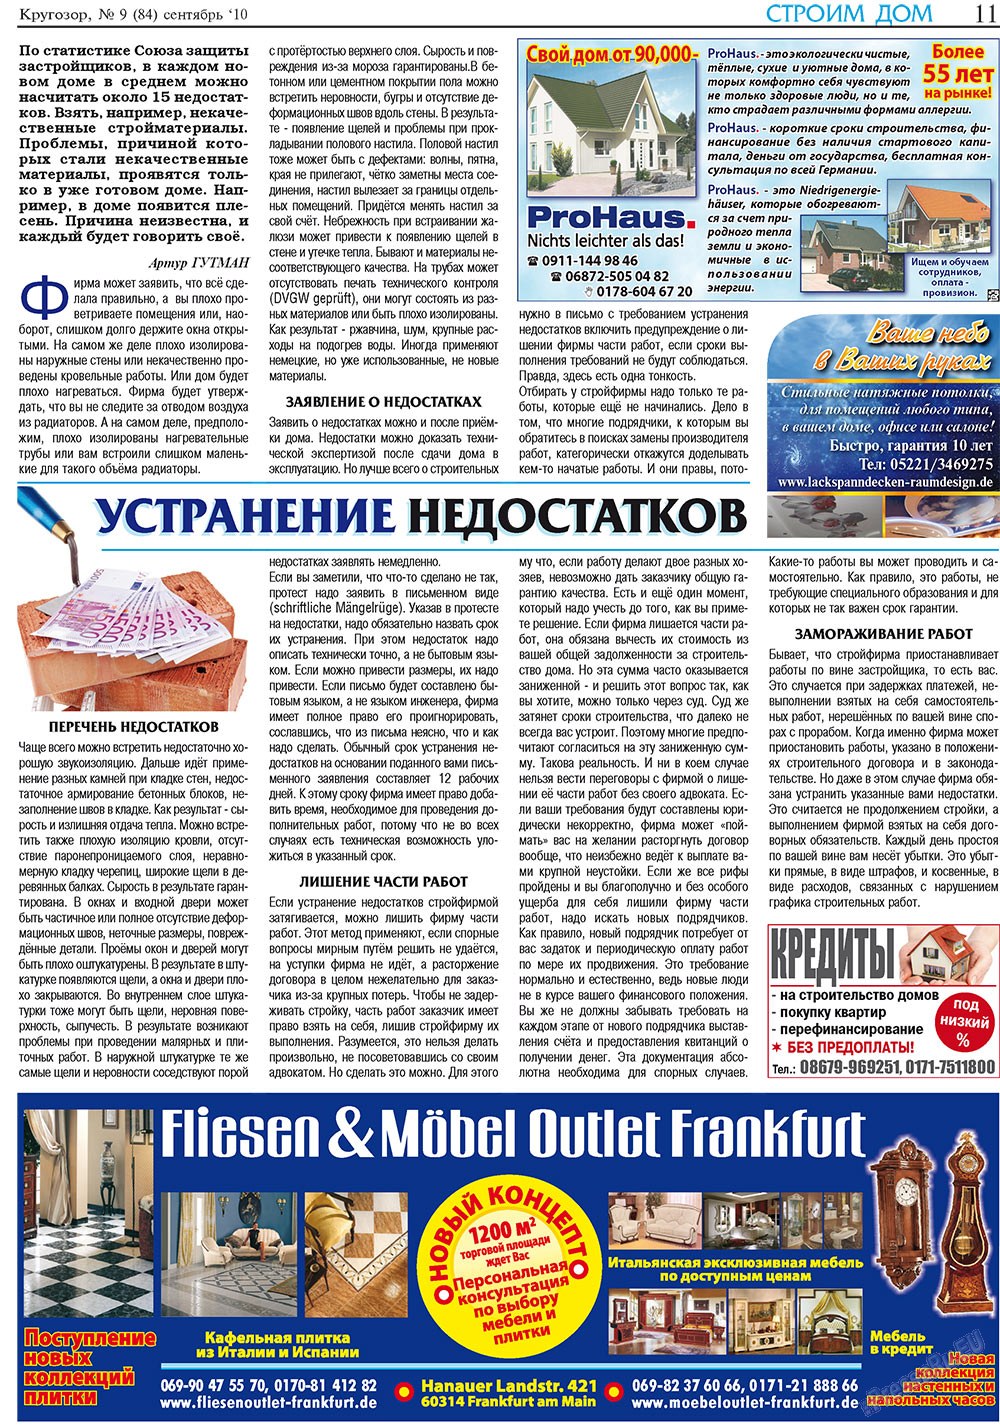 Кругозор плюс!, газета. 2010 №9 стр.11